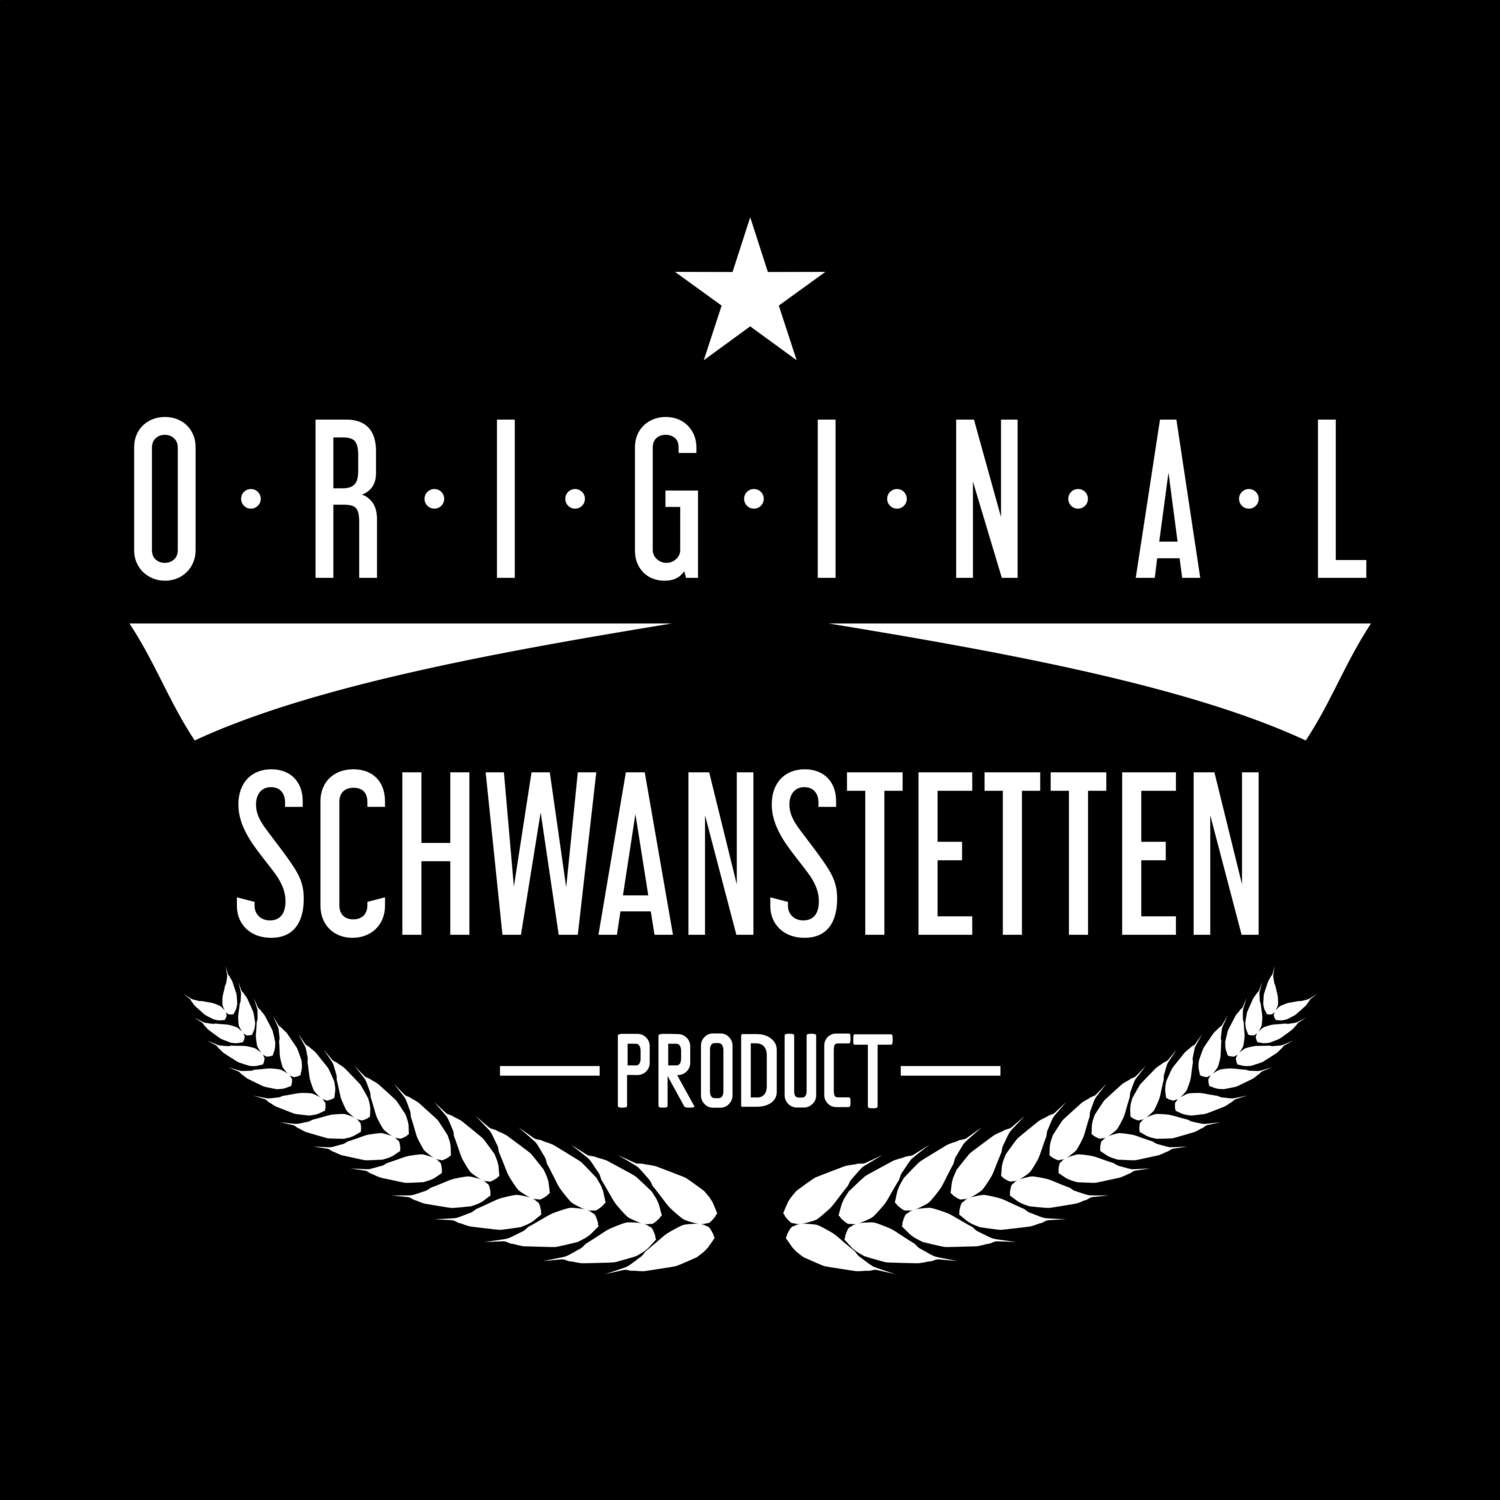 Schwanstetten T-Shirt »Original Product«